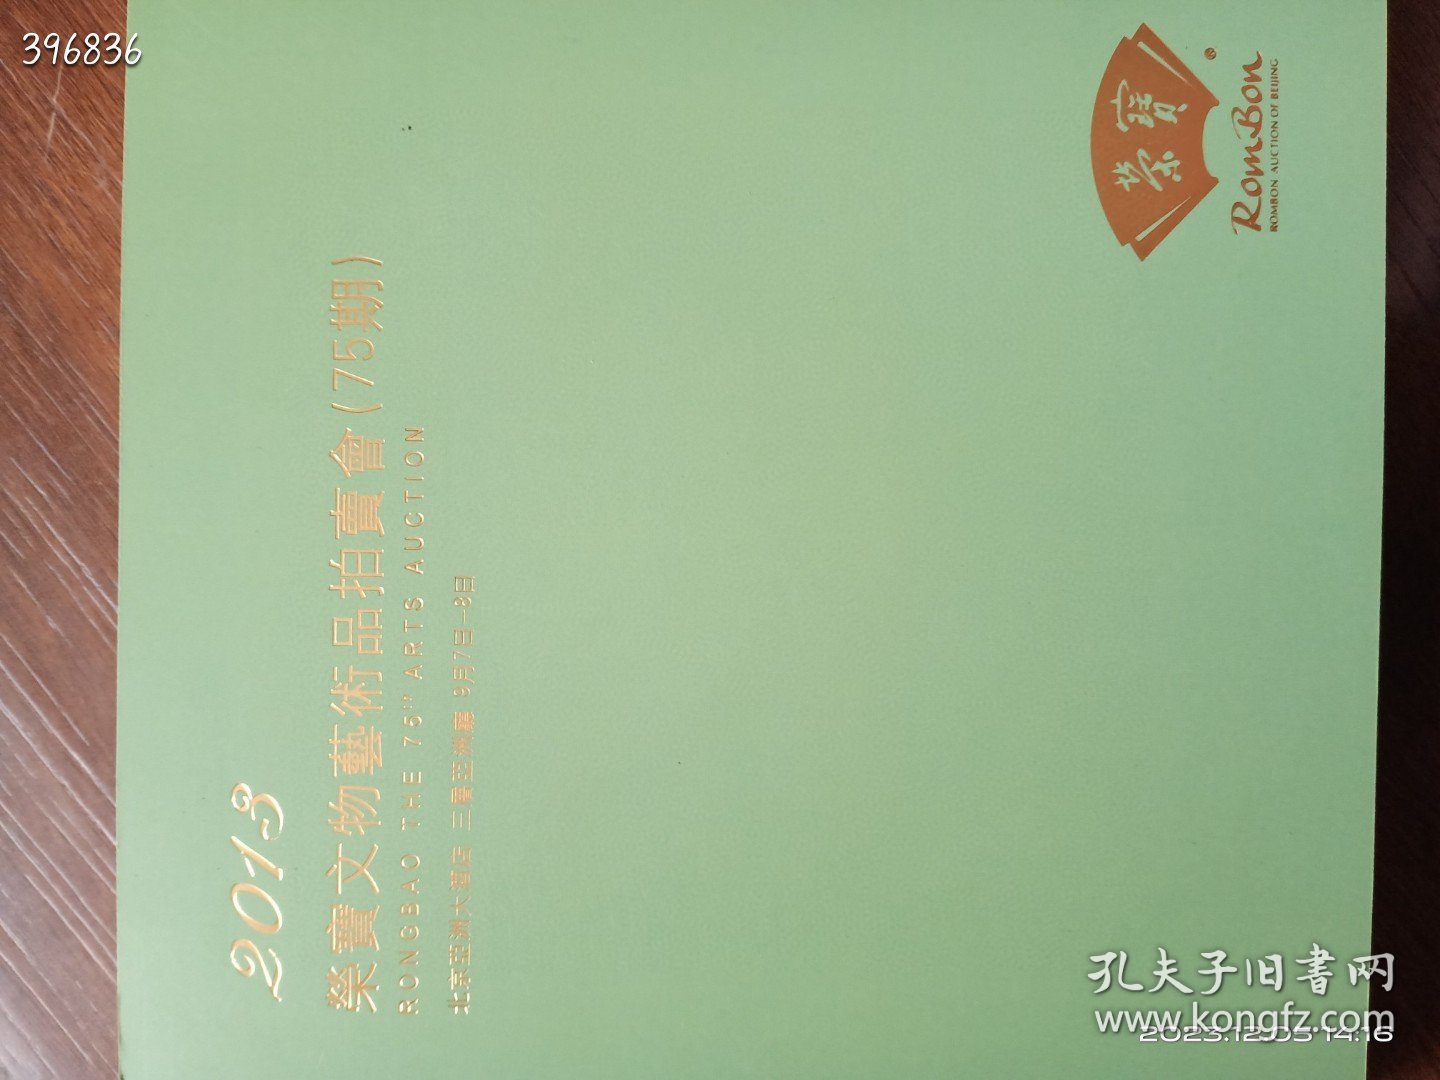 北京荣宝春季艺术品拍卖会五本合售70元包邮